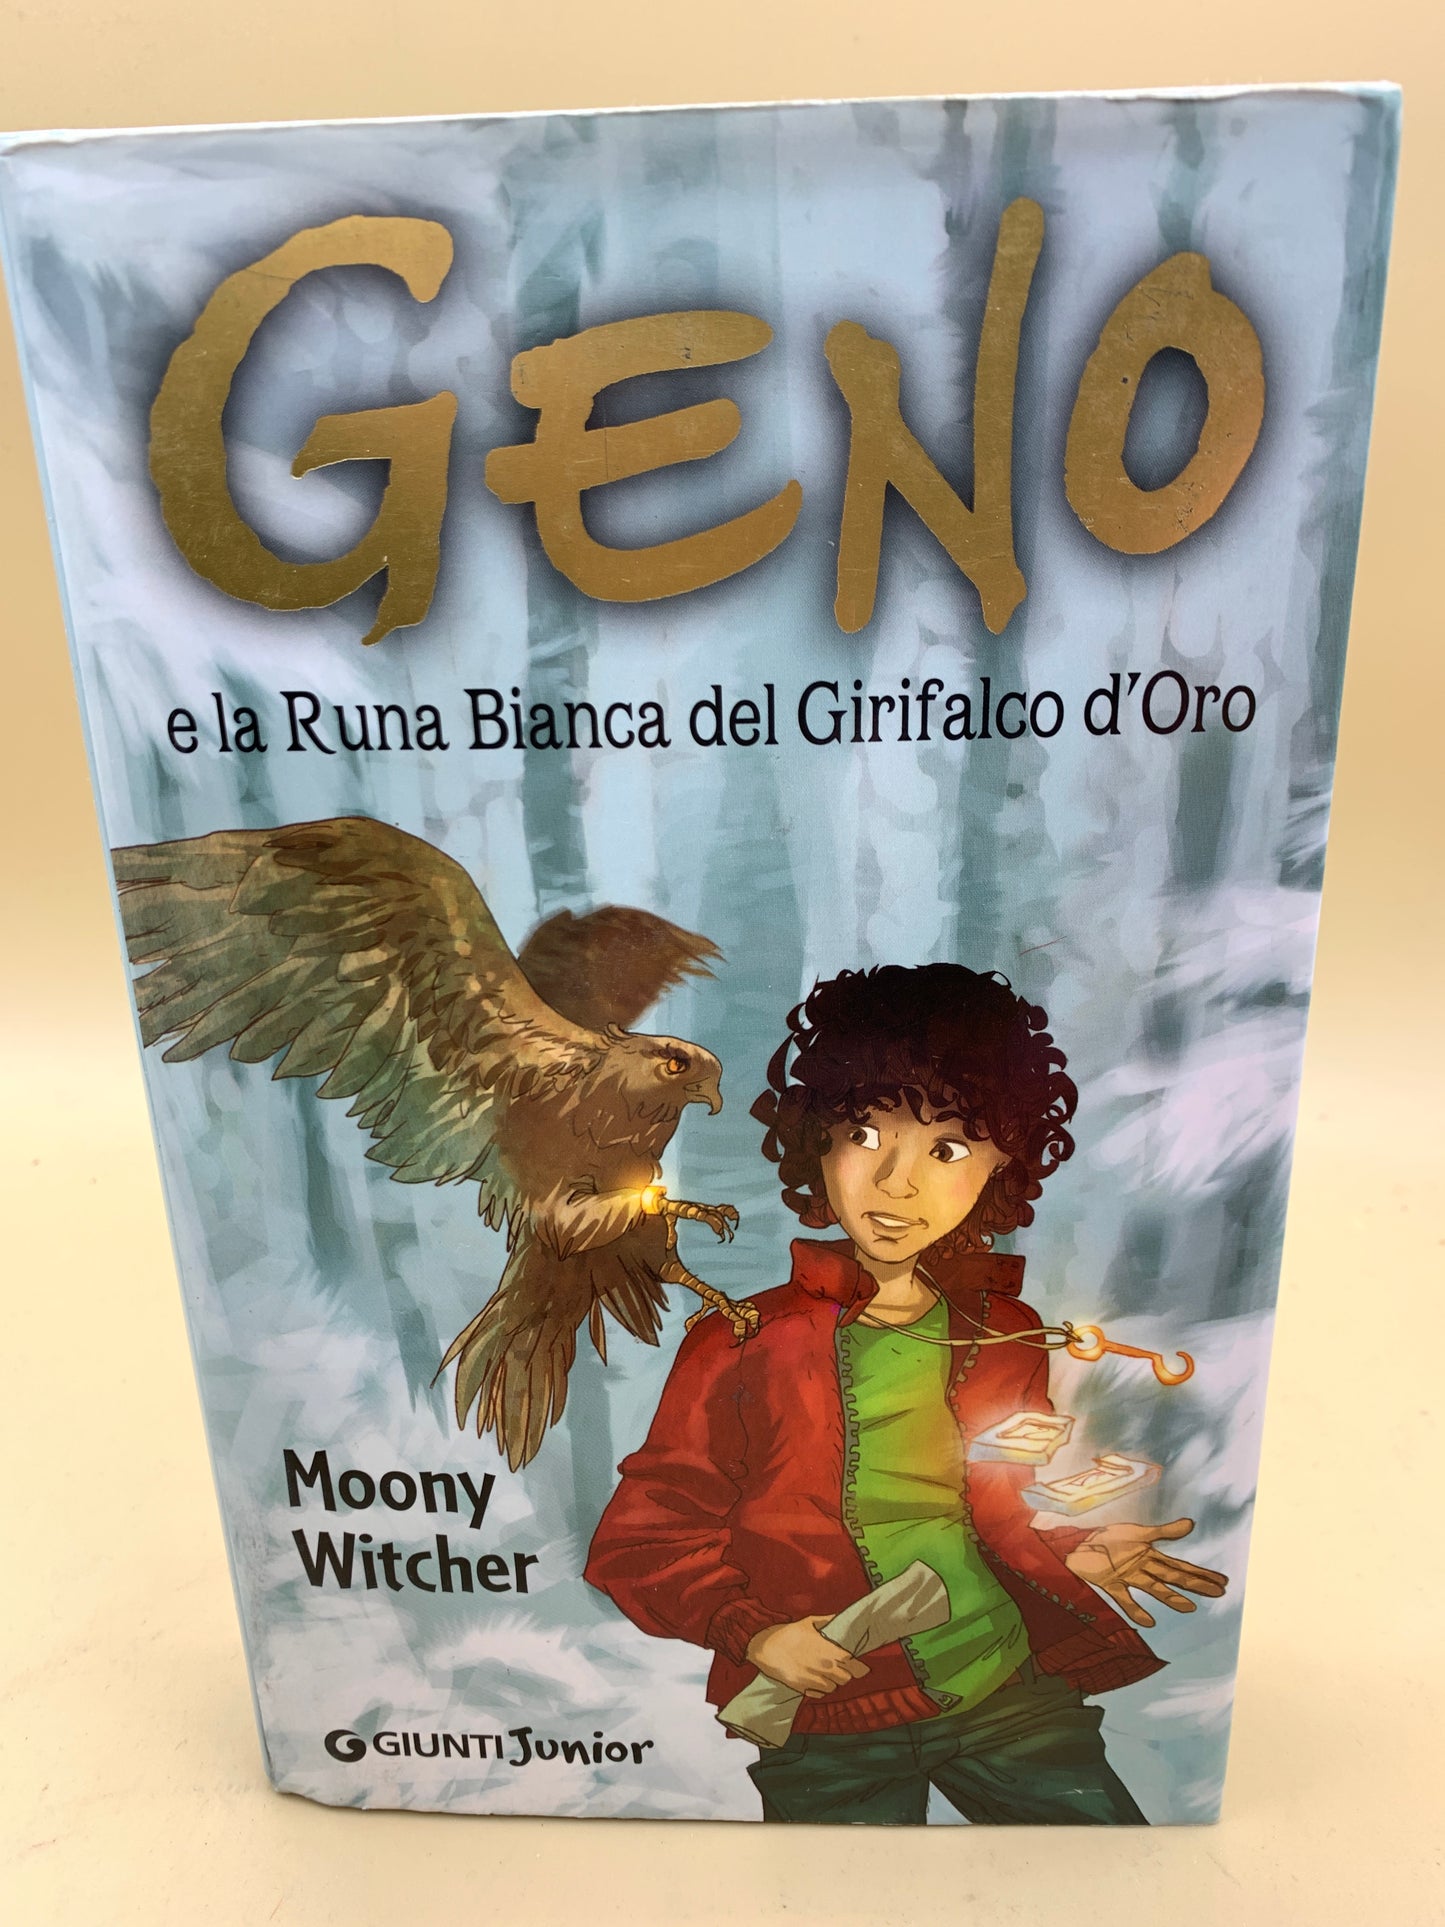 Geno e La Runa Bianca del Girifalco d’Oro - Moony Witcher